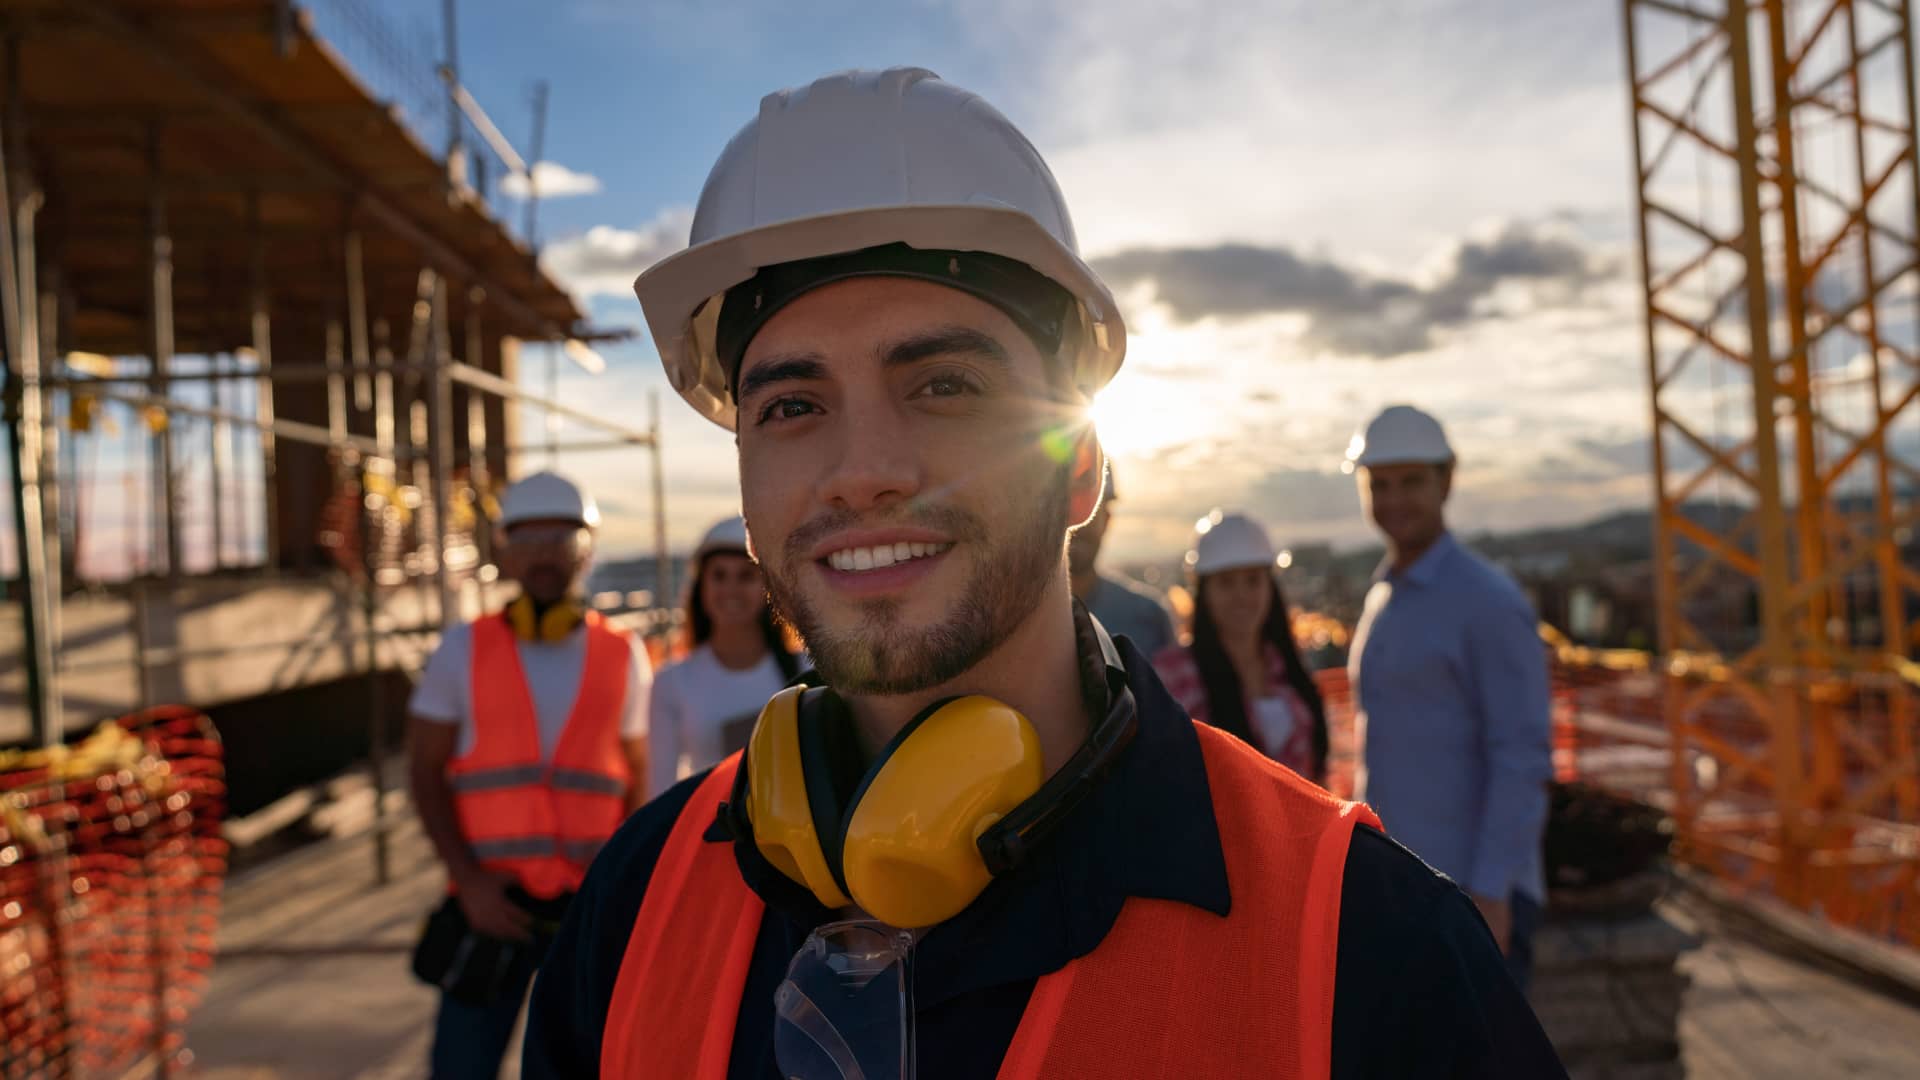 Trabajador de la construcción en primer plano con compañeros de trabajo al fondo, todos ellos protegidos por el seguro de salud de su empresa